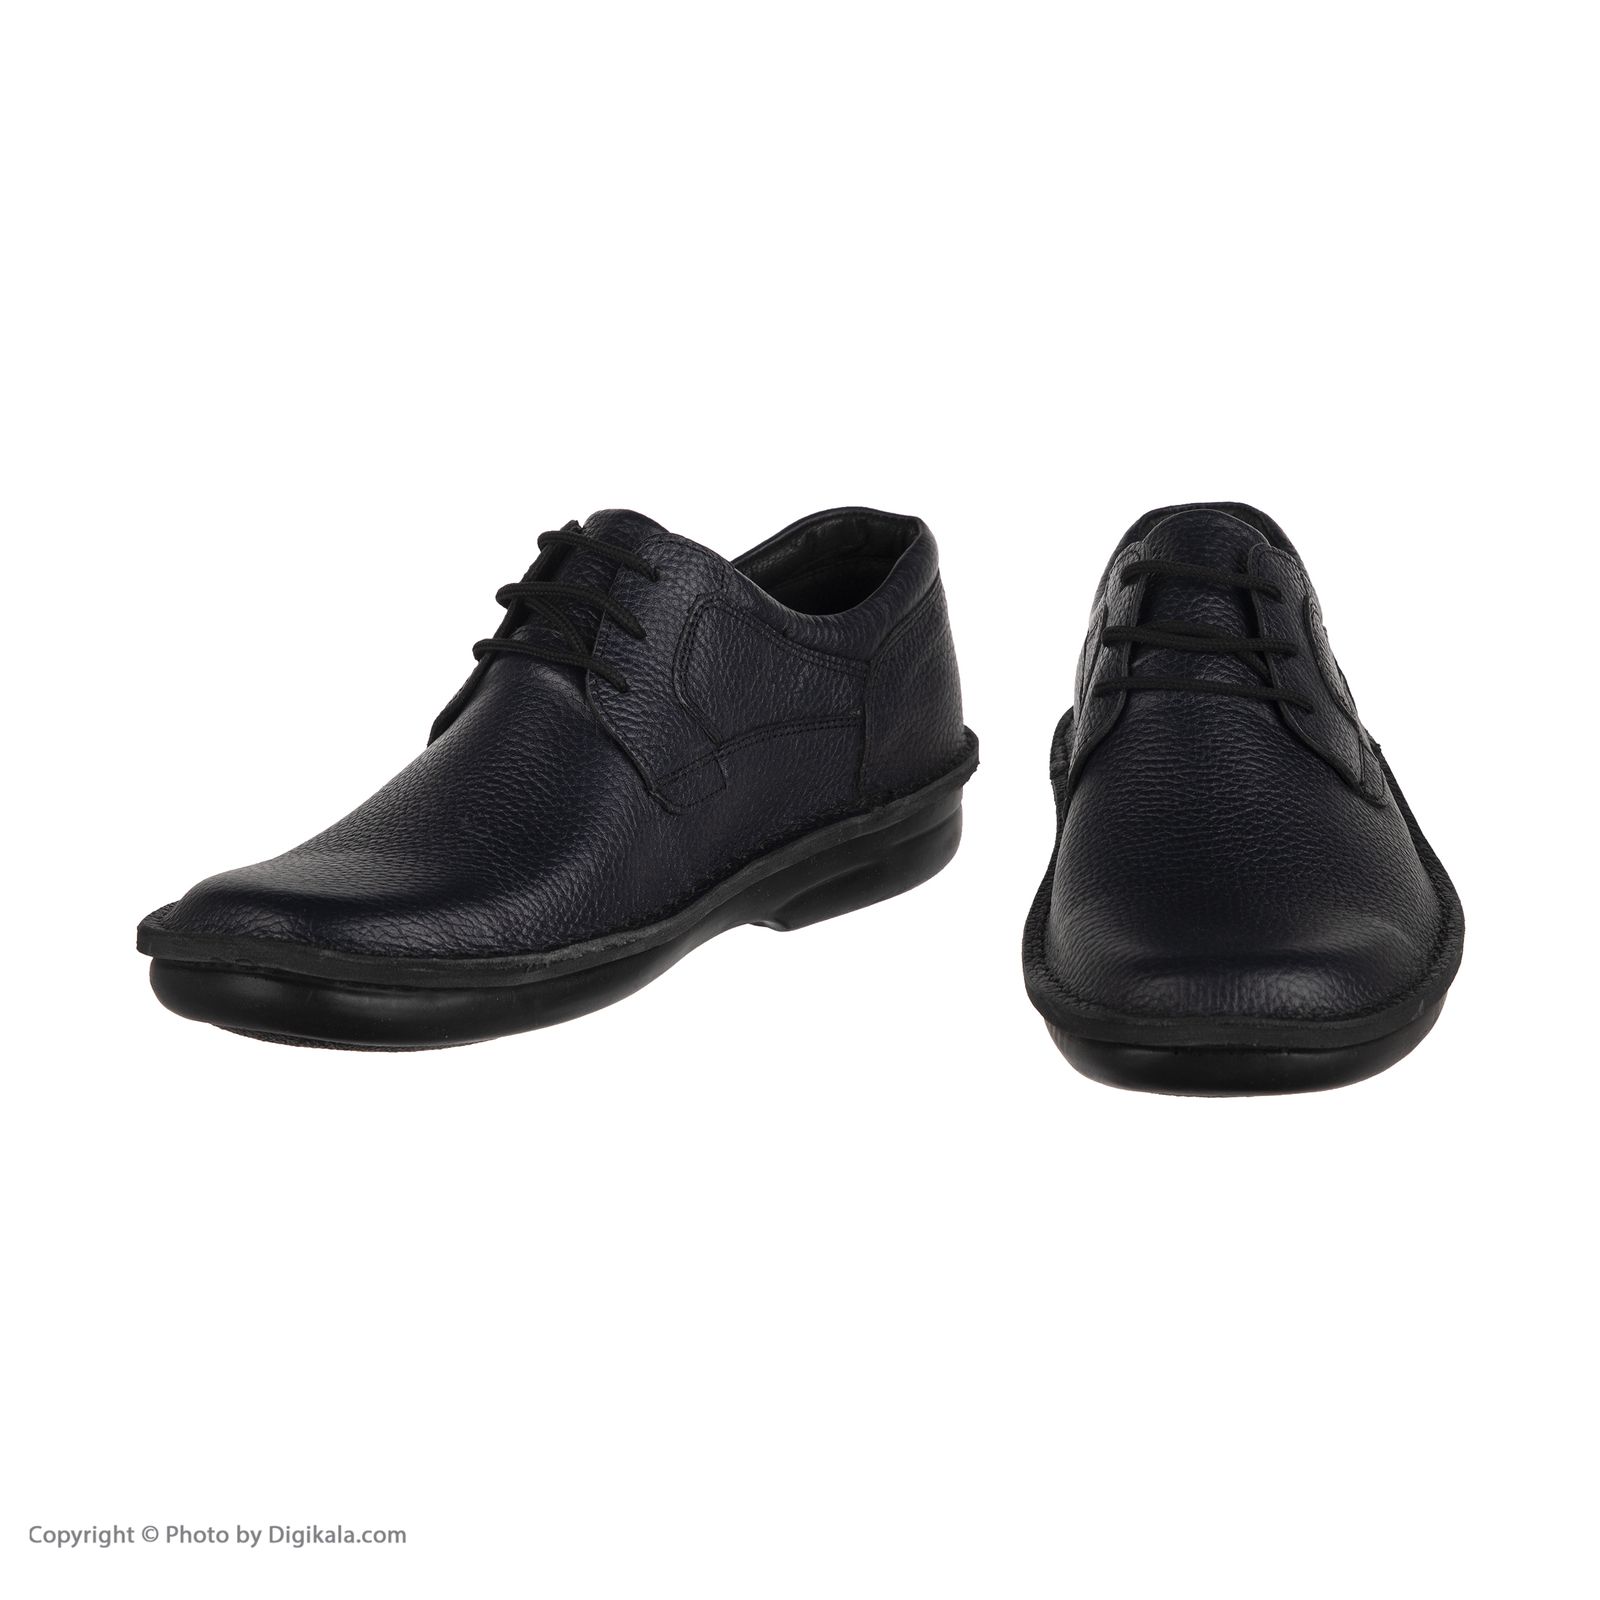  کفش روزمره مردانه سوته مدل 4789A501103 -  - 7